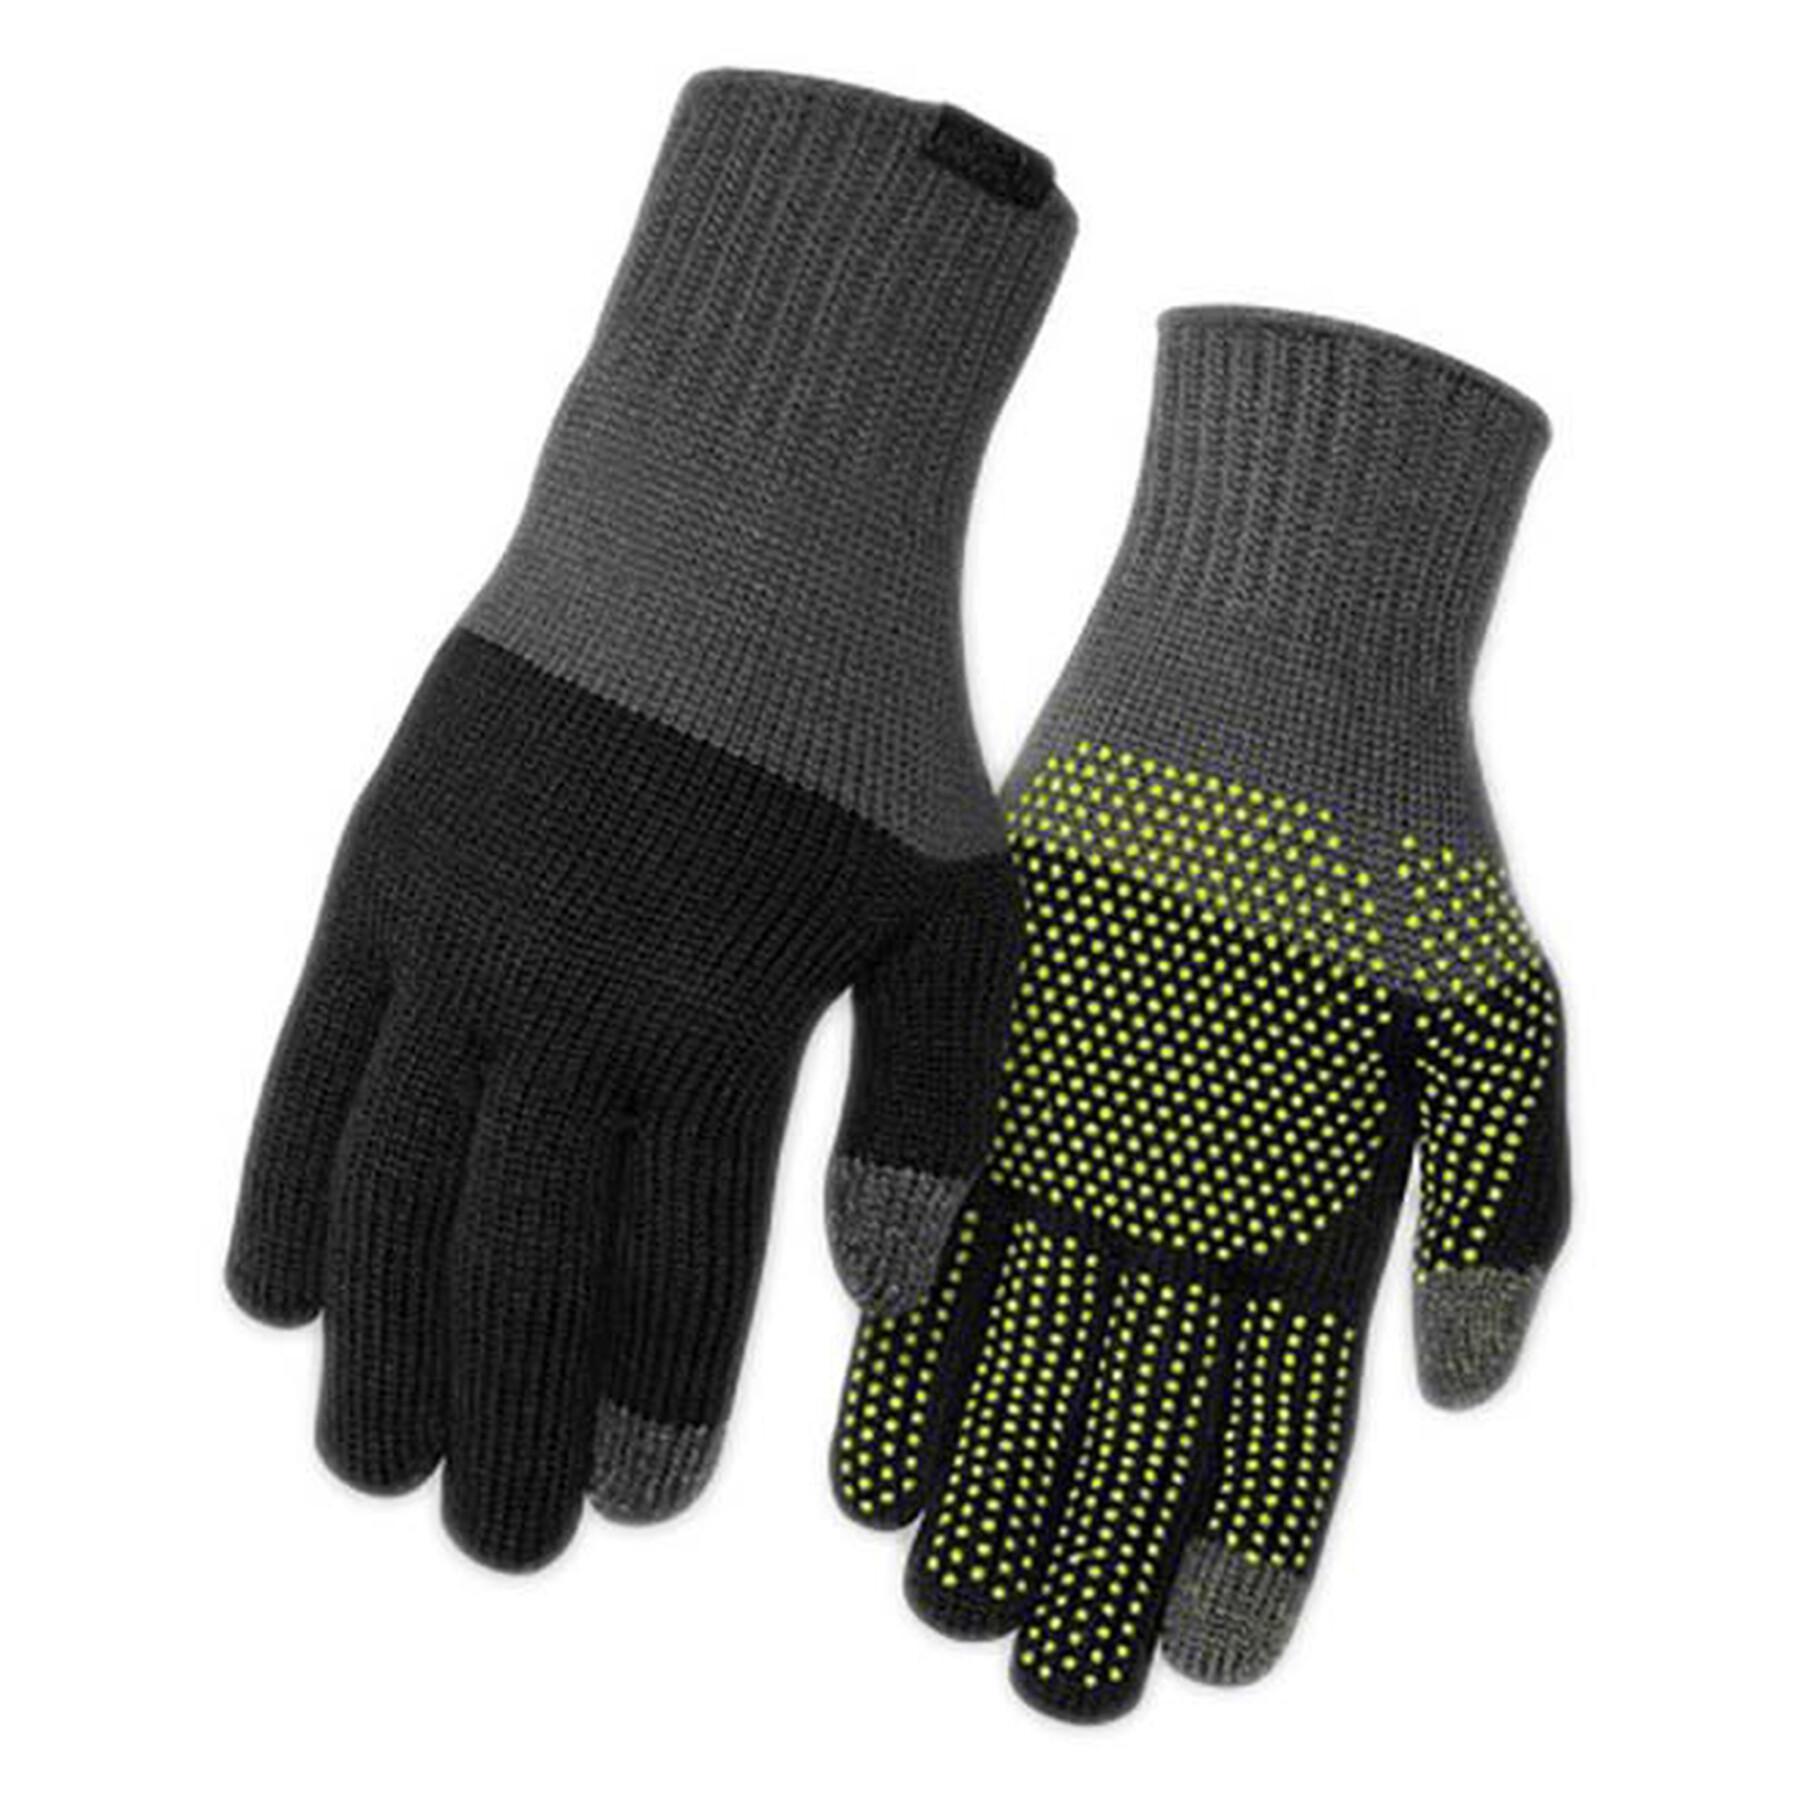 Gloves Giro Knit Merino Wool